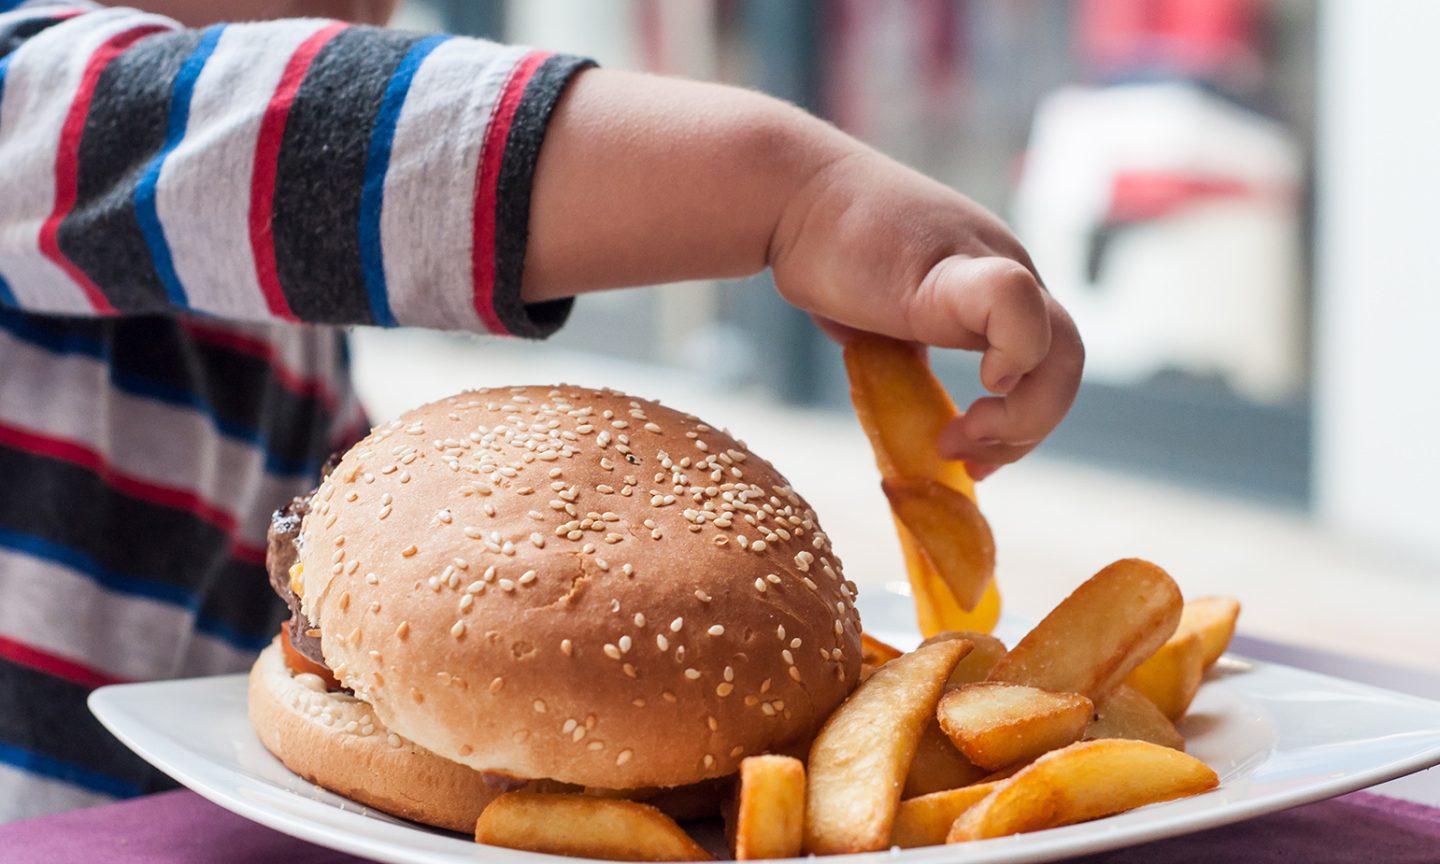 كيف يؤثر تناول الطعام في وقت متأخر على حرق السعرات وتخزين الدهون؟